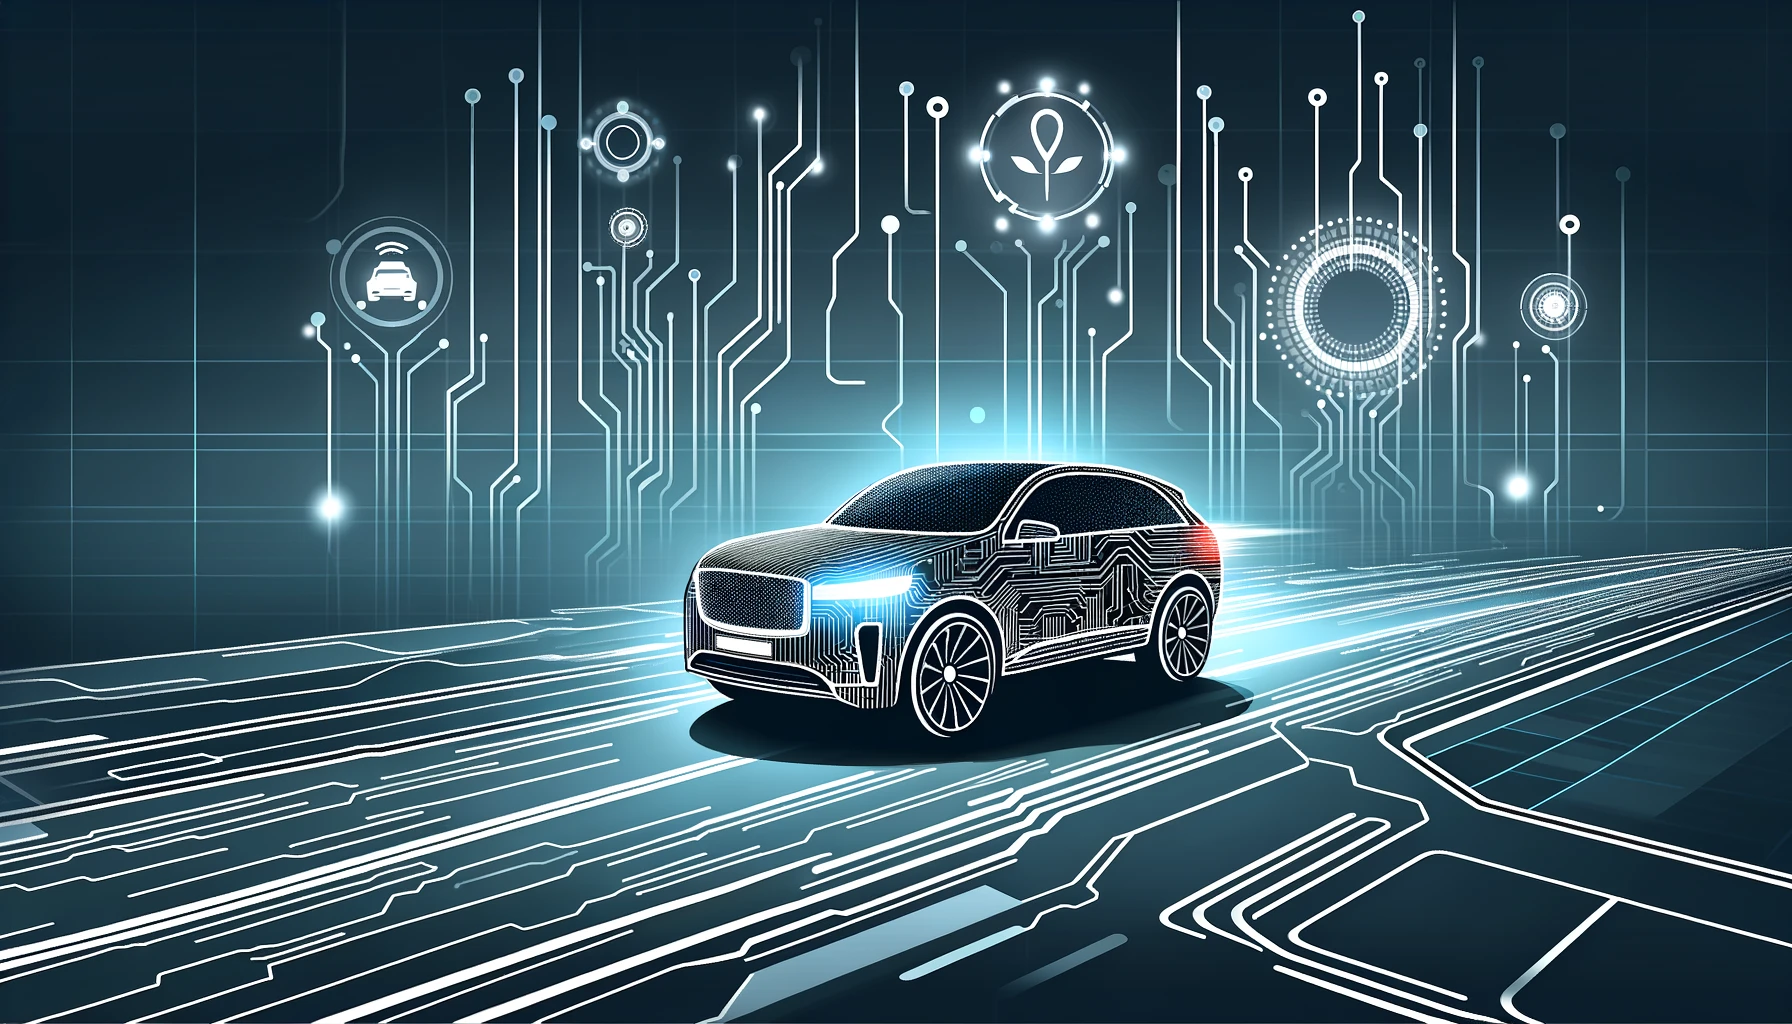 Applied Intuition achieves a $6 billion valuation for its AI-driven autonomous vehicle software.